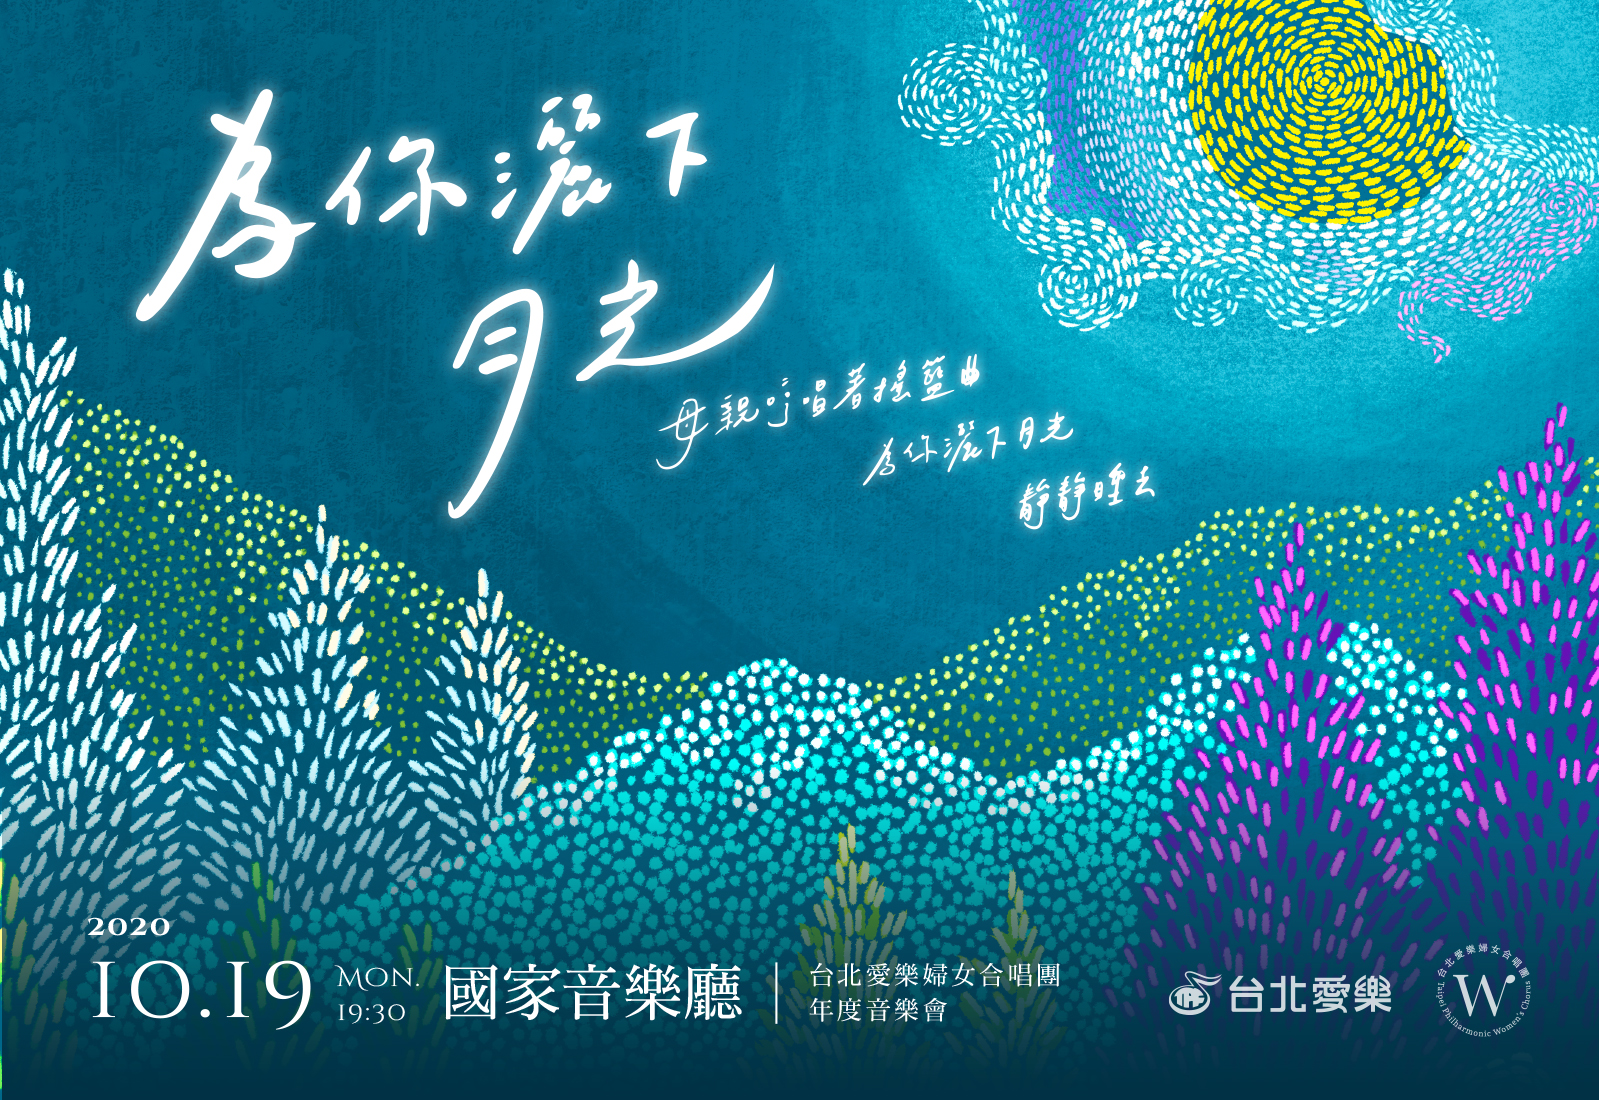 10/19 《為你灑下月光》2020台北愛樂婦女合唱團年度音樂會